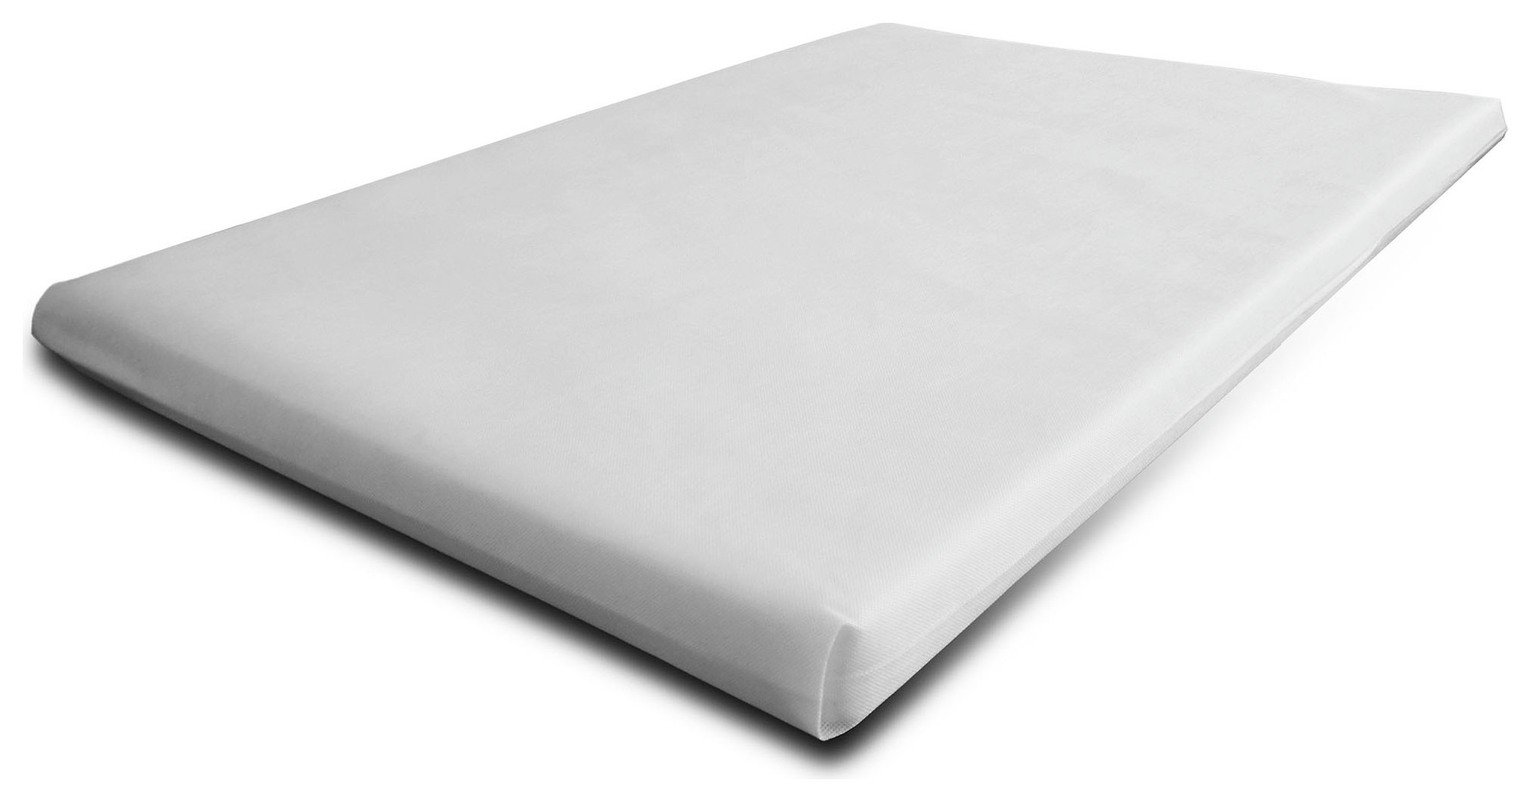 foam or innerspring cot mattress